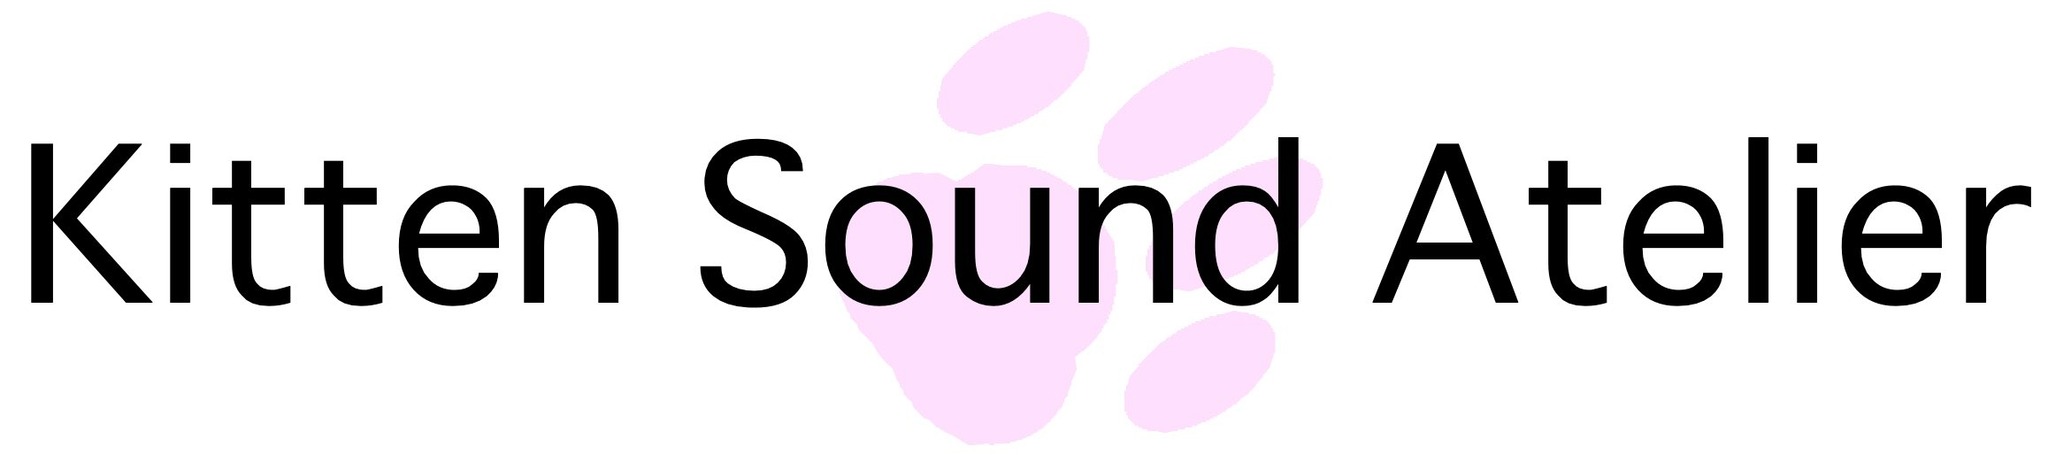 Kitten Sound Atelier